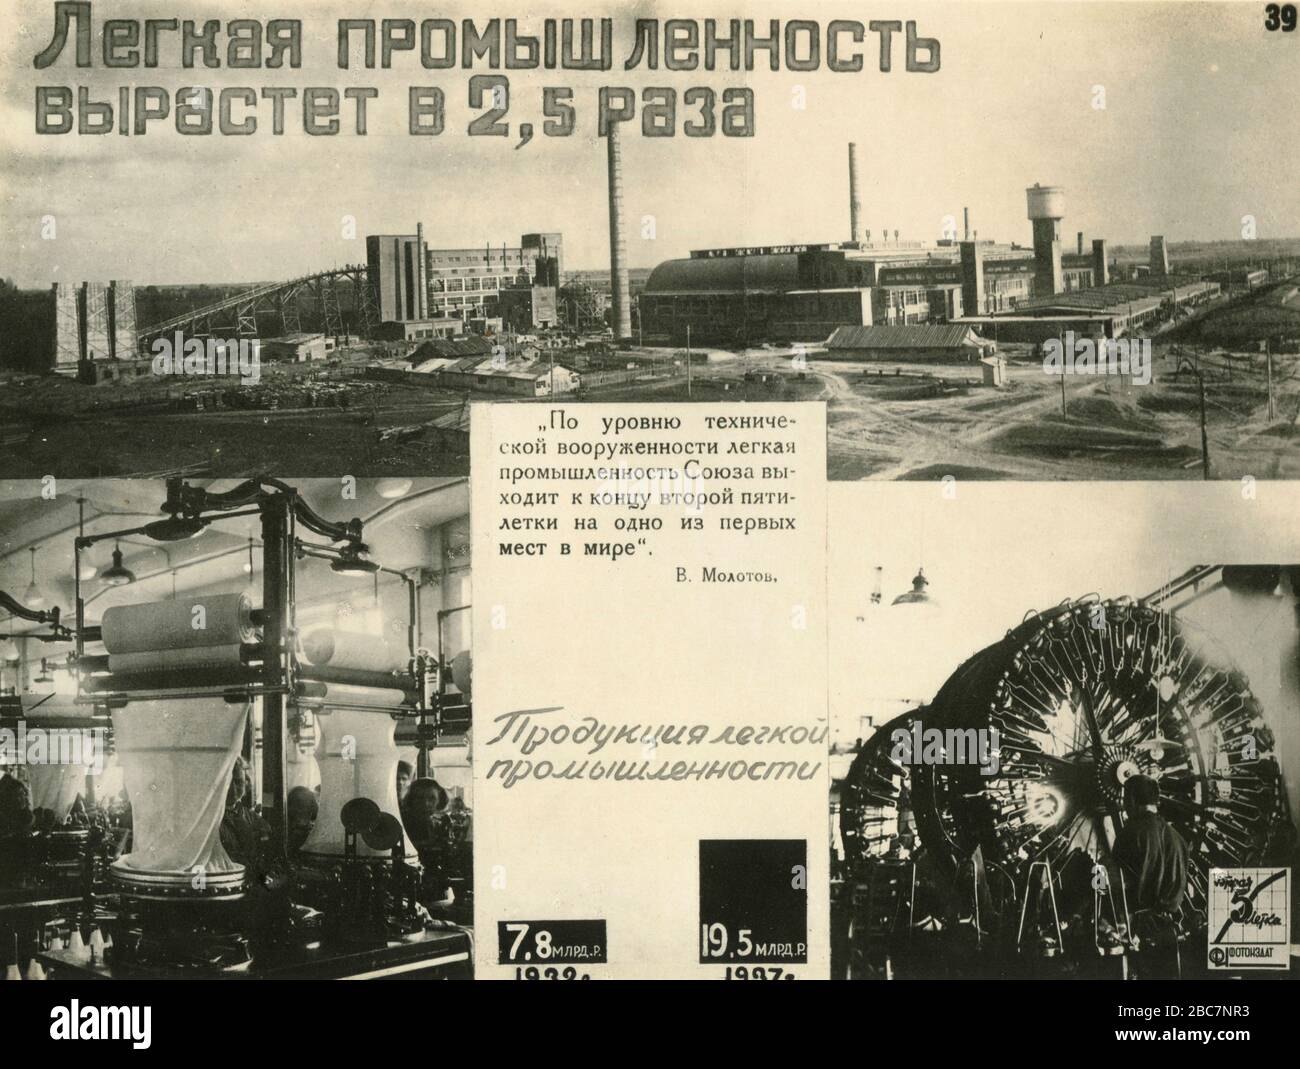 Foto de propaganda del segundo plan quinquenal de Stalin para el desarrollo de la economía nacional de la Unión de Repúblicas Socialistas Soviéticas (URSS), 1945 Foto de stock